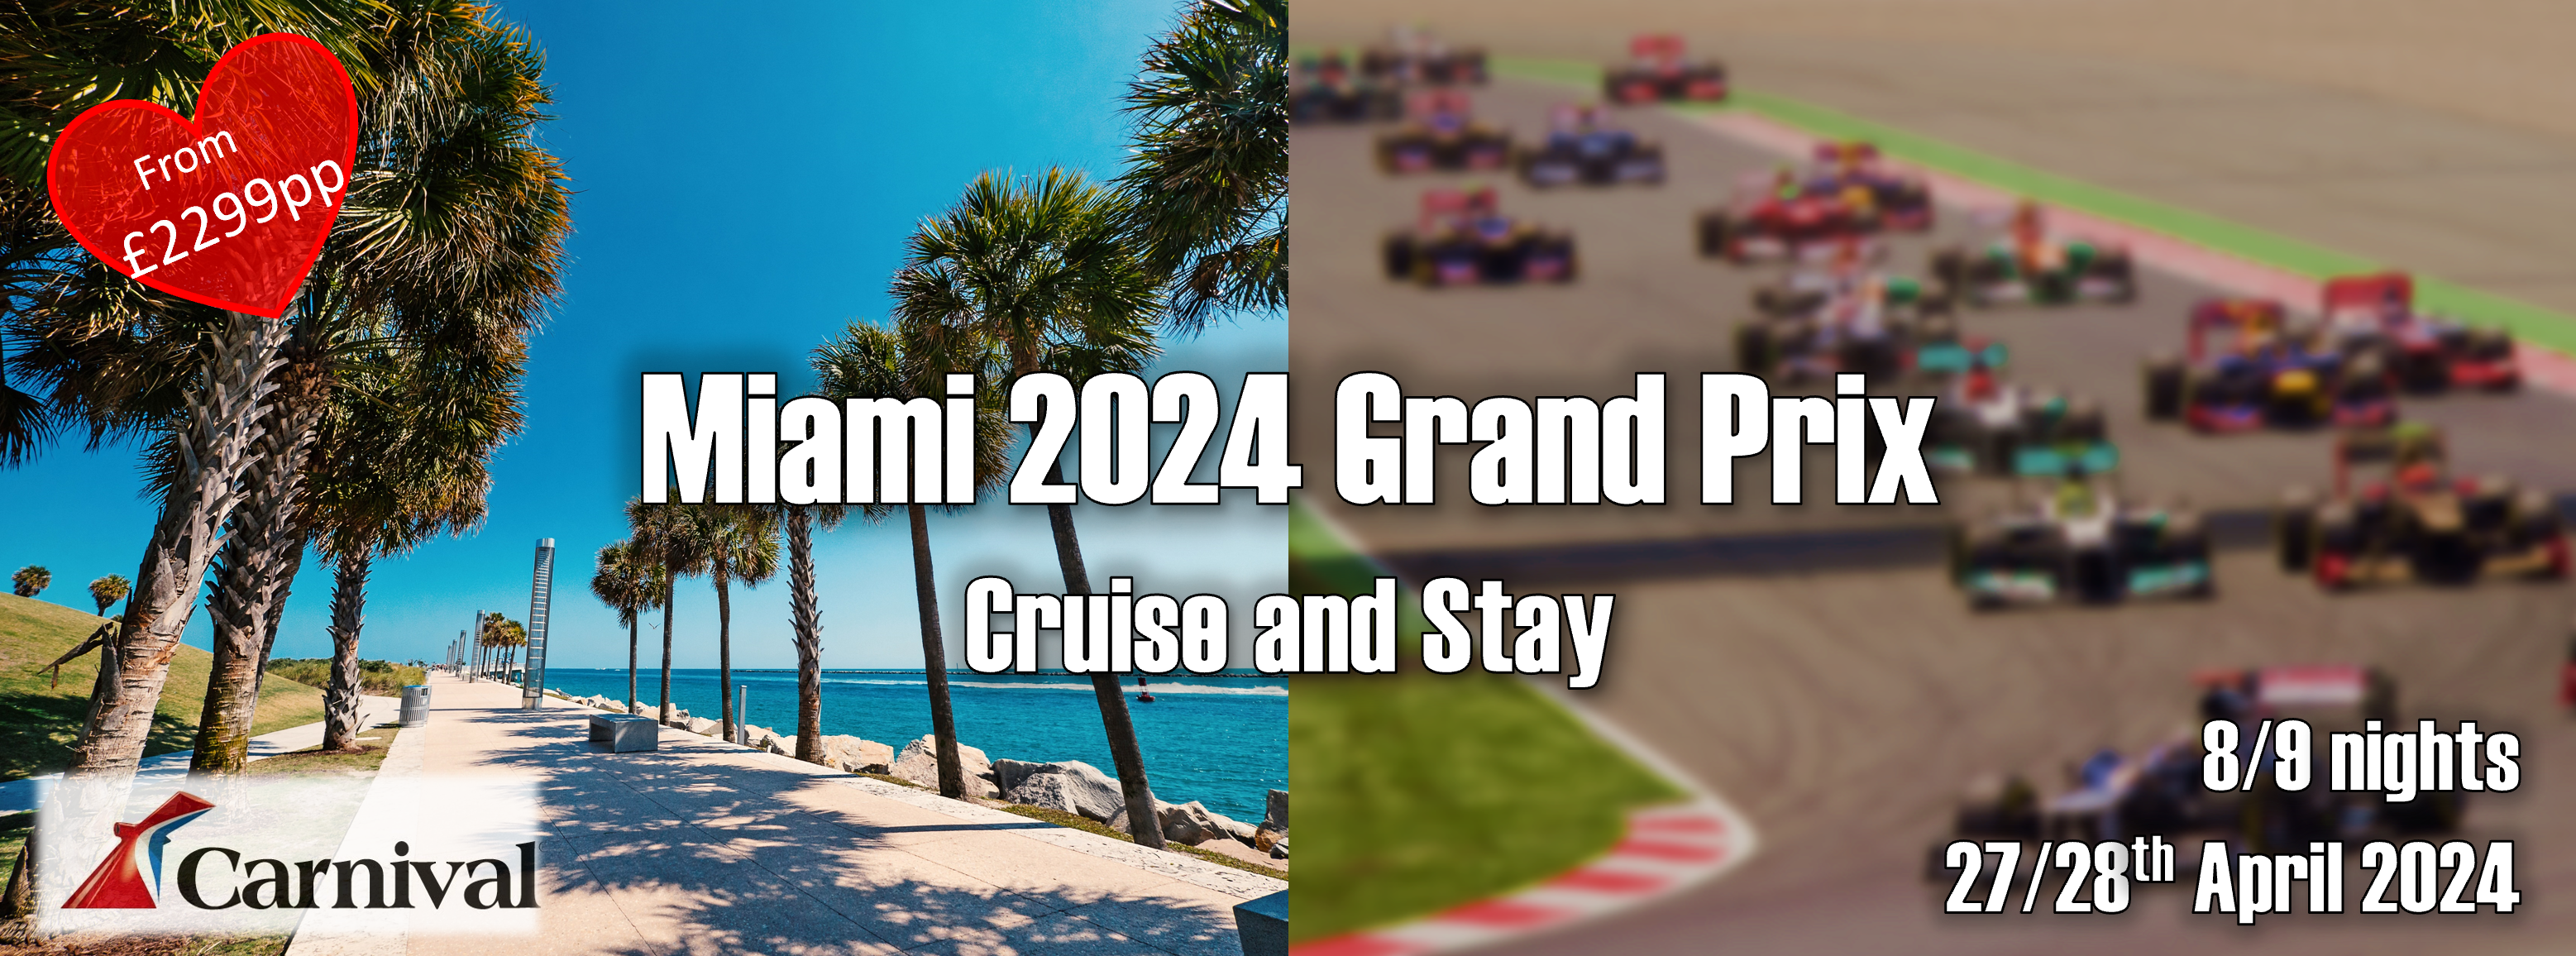 Miami Grand Prix Cruise and Stay